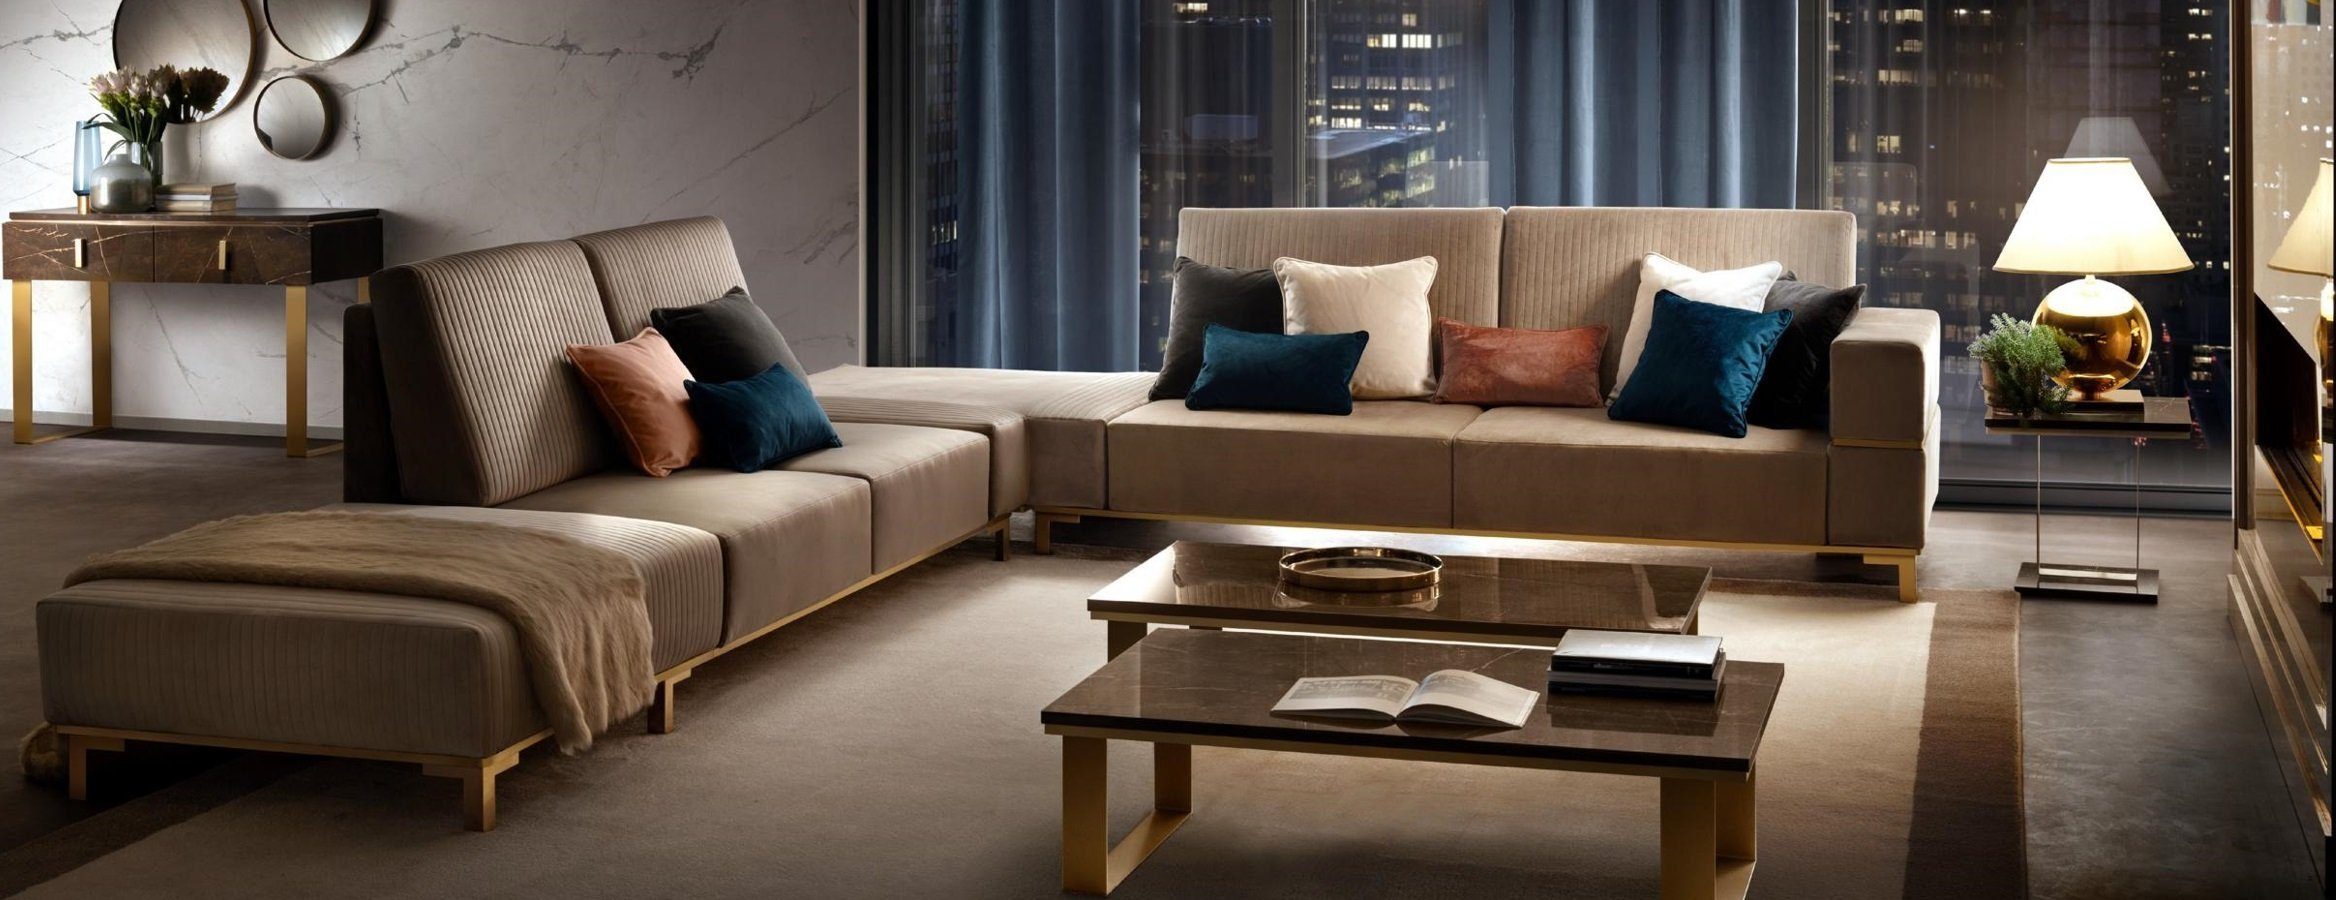 JVmoebel Ecksofa Luxus Möbel Ecksofa L Form Couch Design Polsterung Textil, Made in Europe